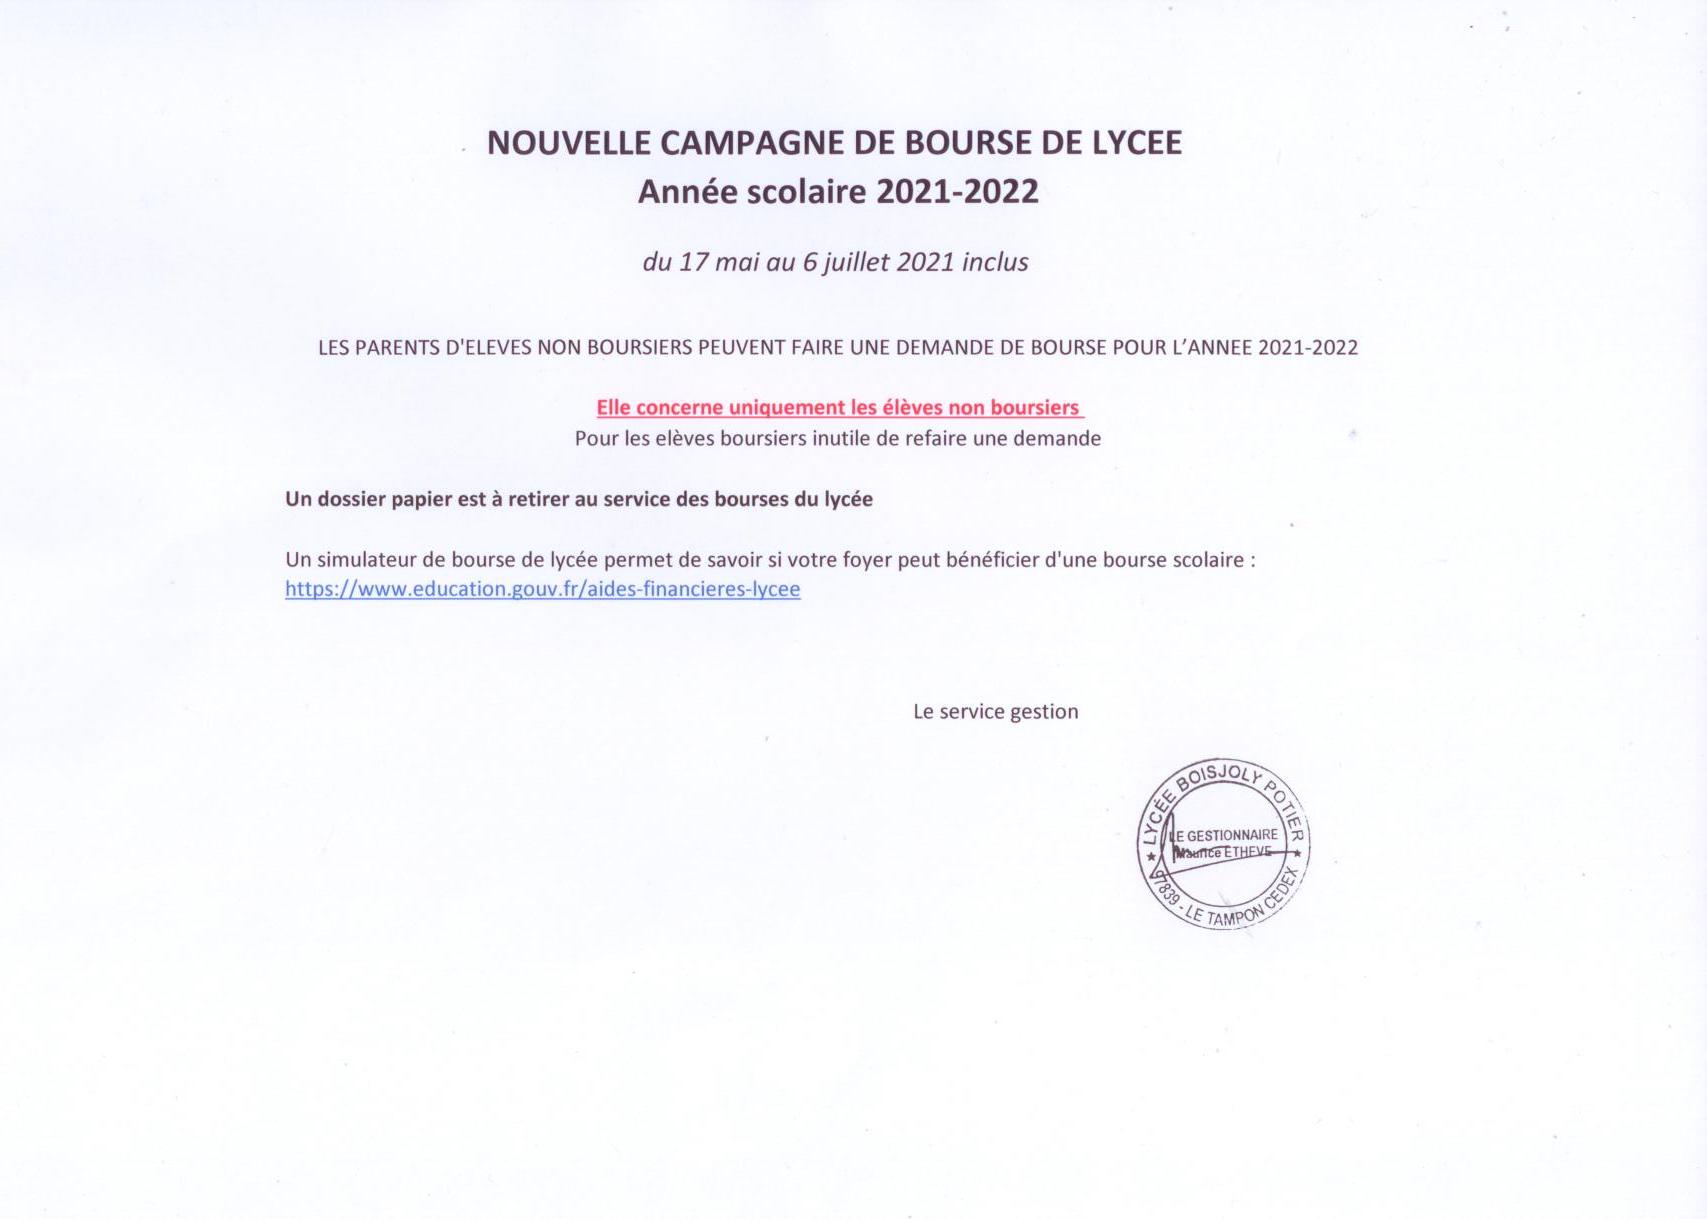 NOUVELLE CAMPAGNE DE BOURSE 2021-2022